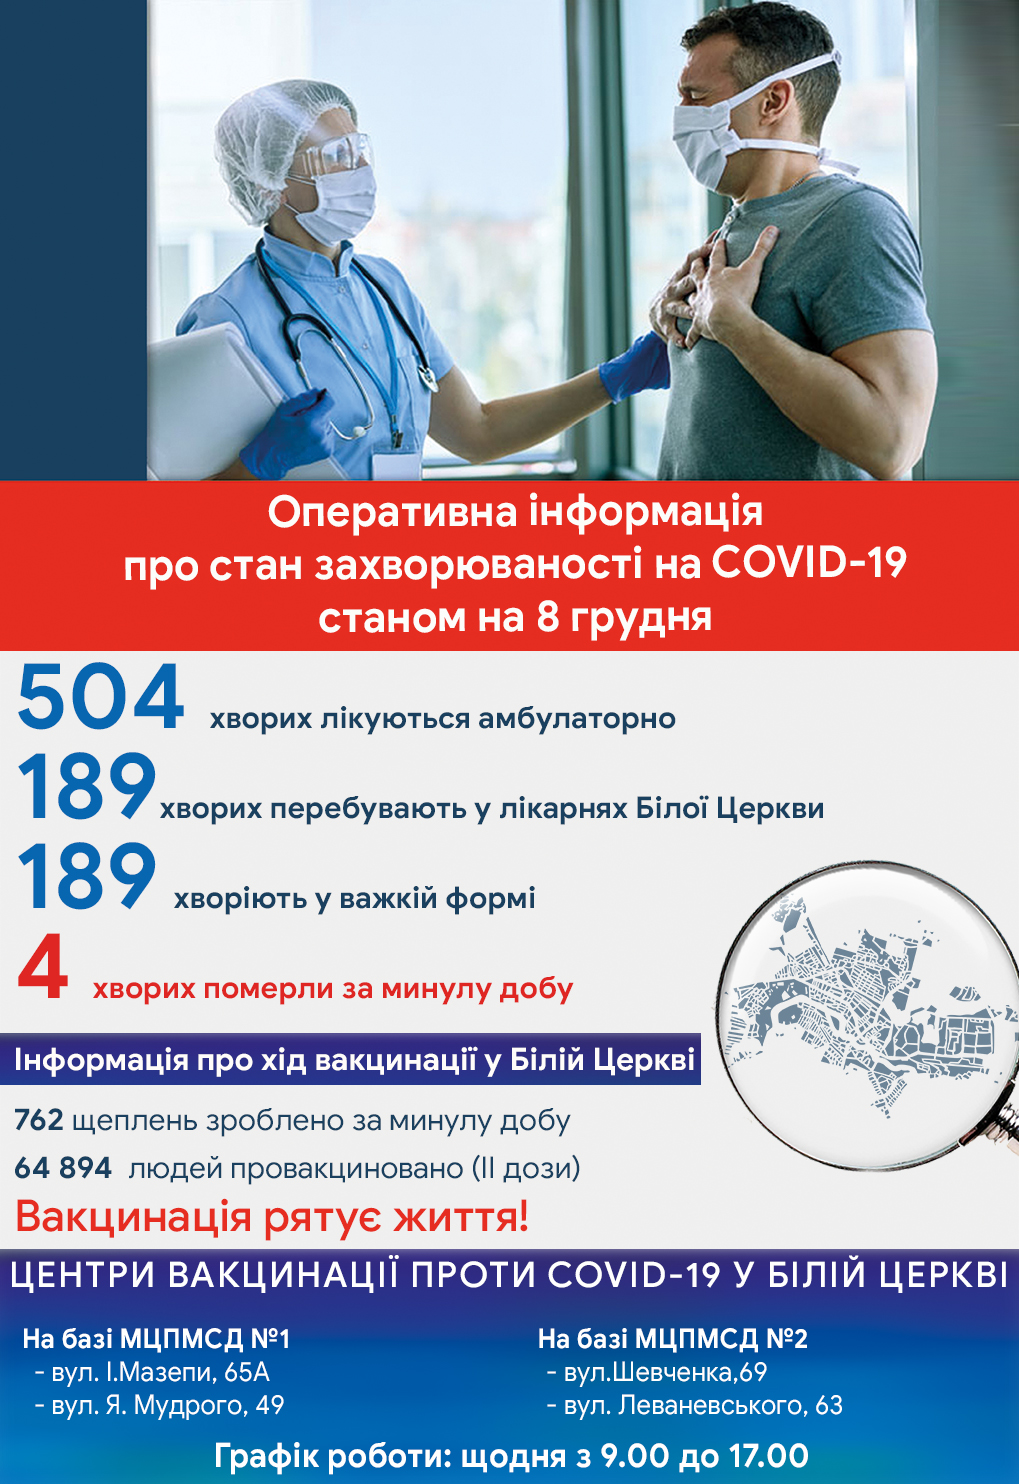 Оперативна інформація про стан захворюваності на COVID-19 станом на 08 грудня